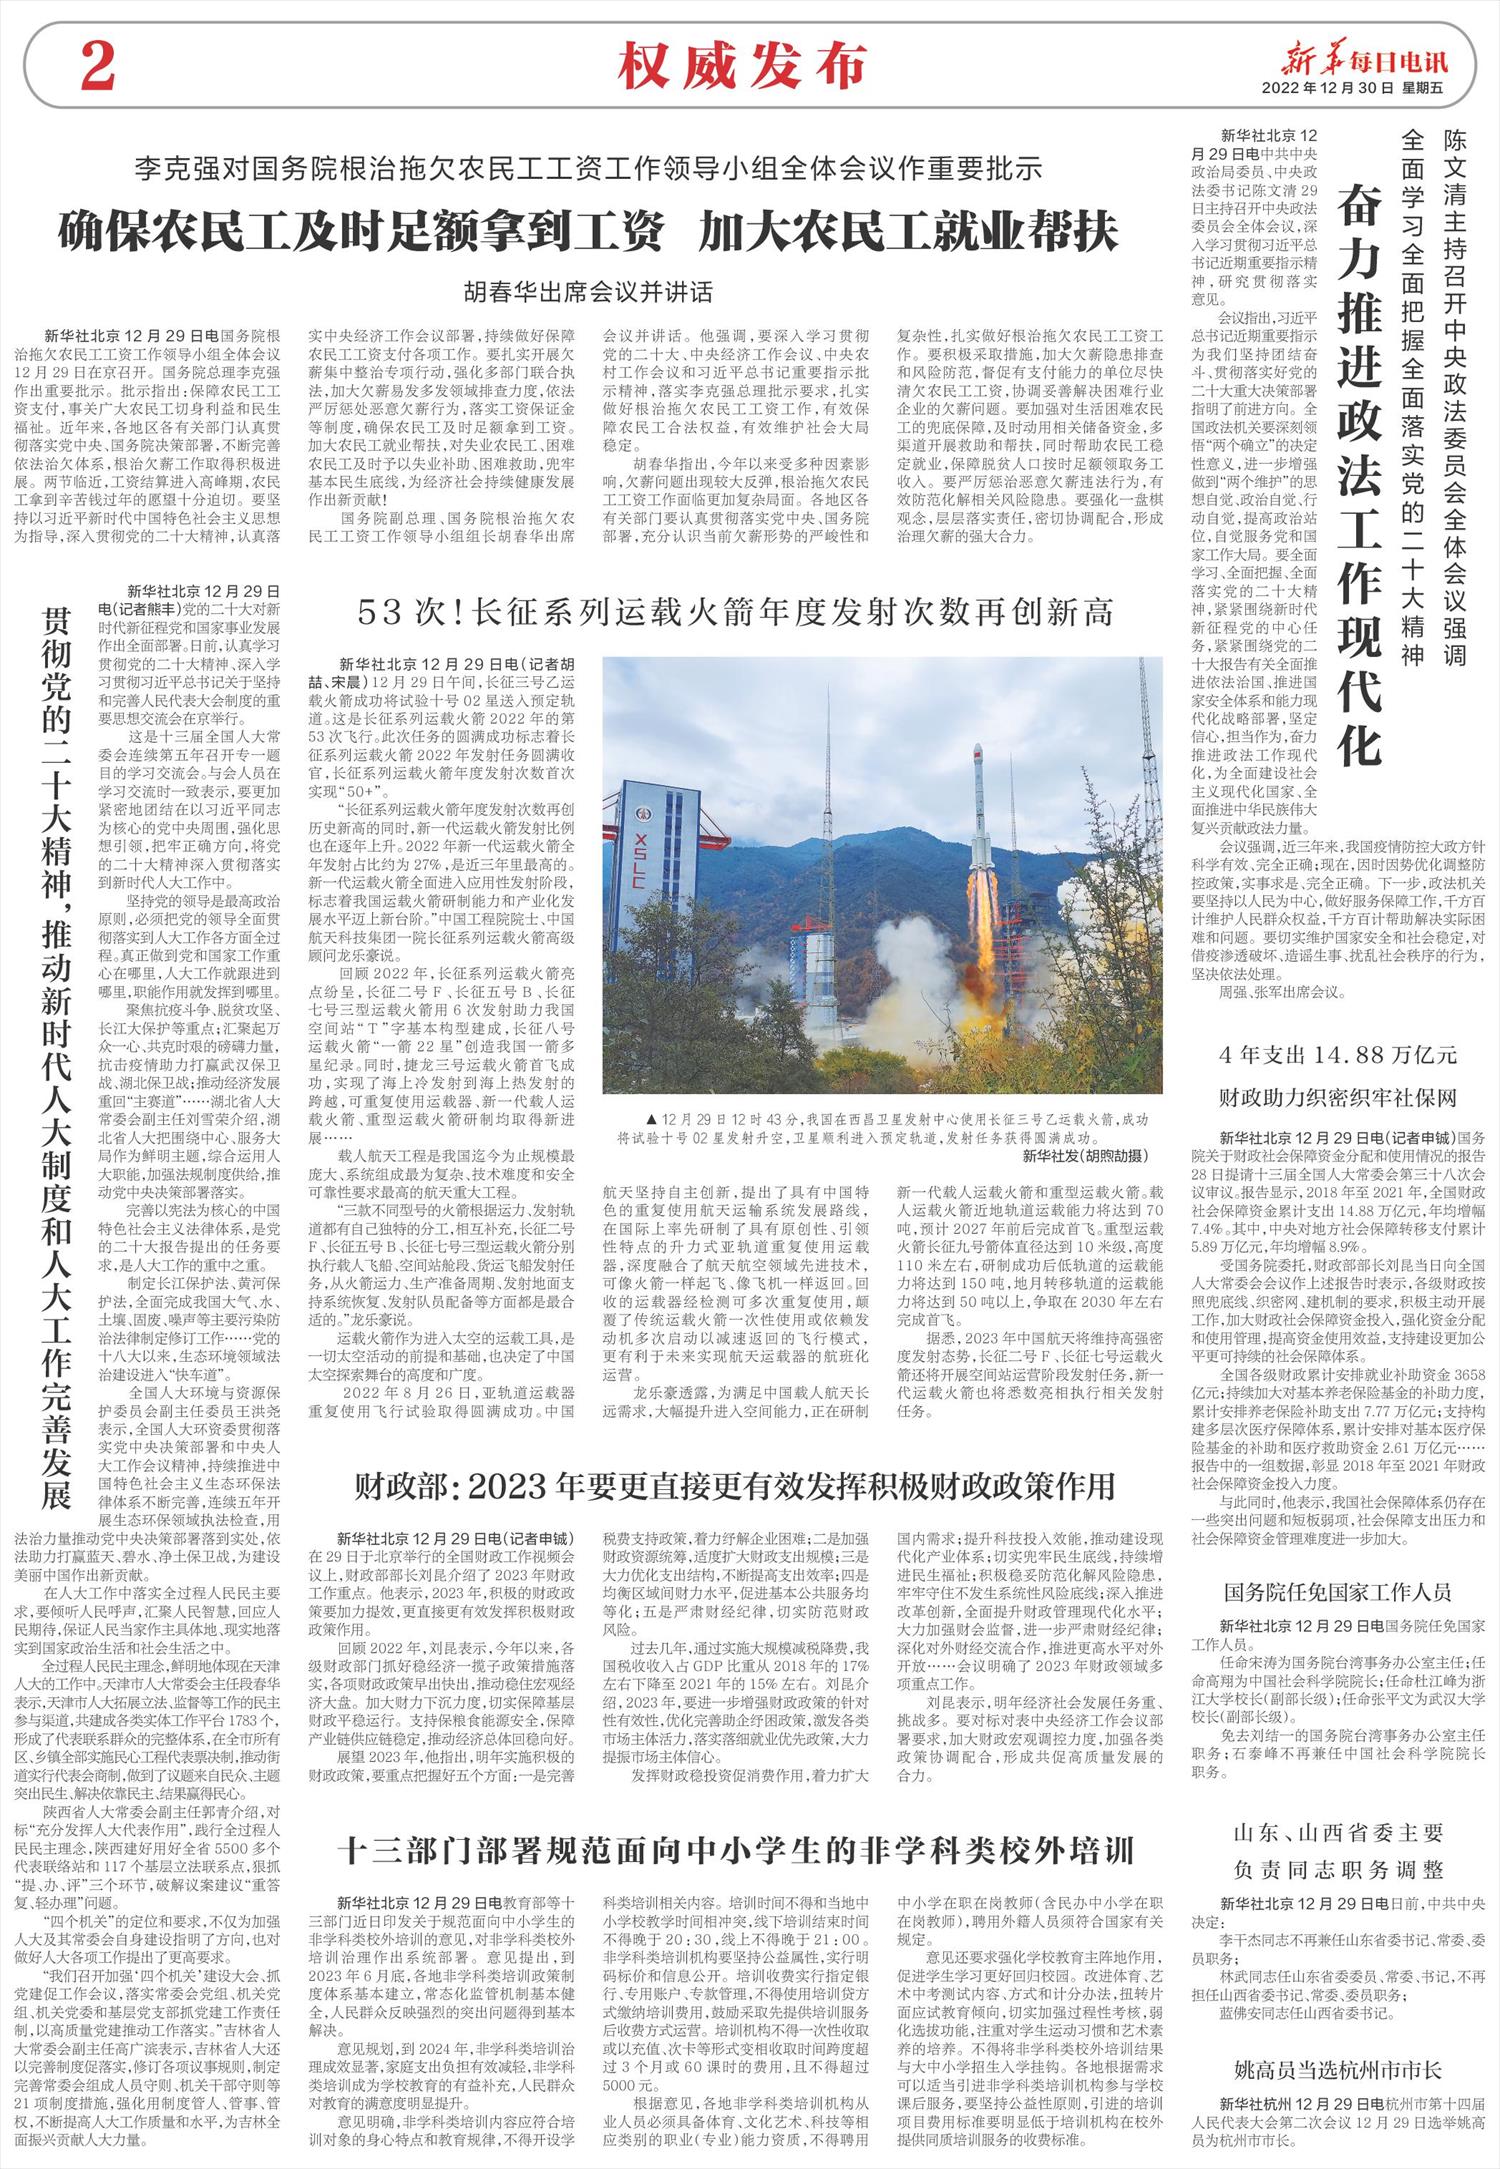 新华每日电讯-微报纸-2022年12月30日